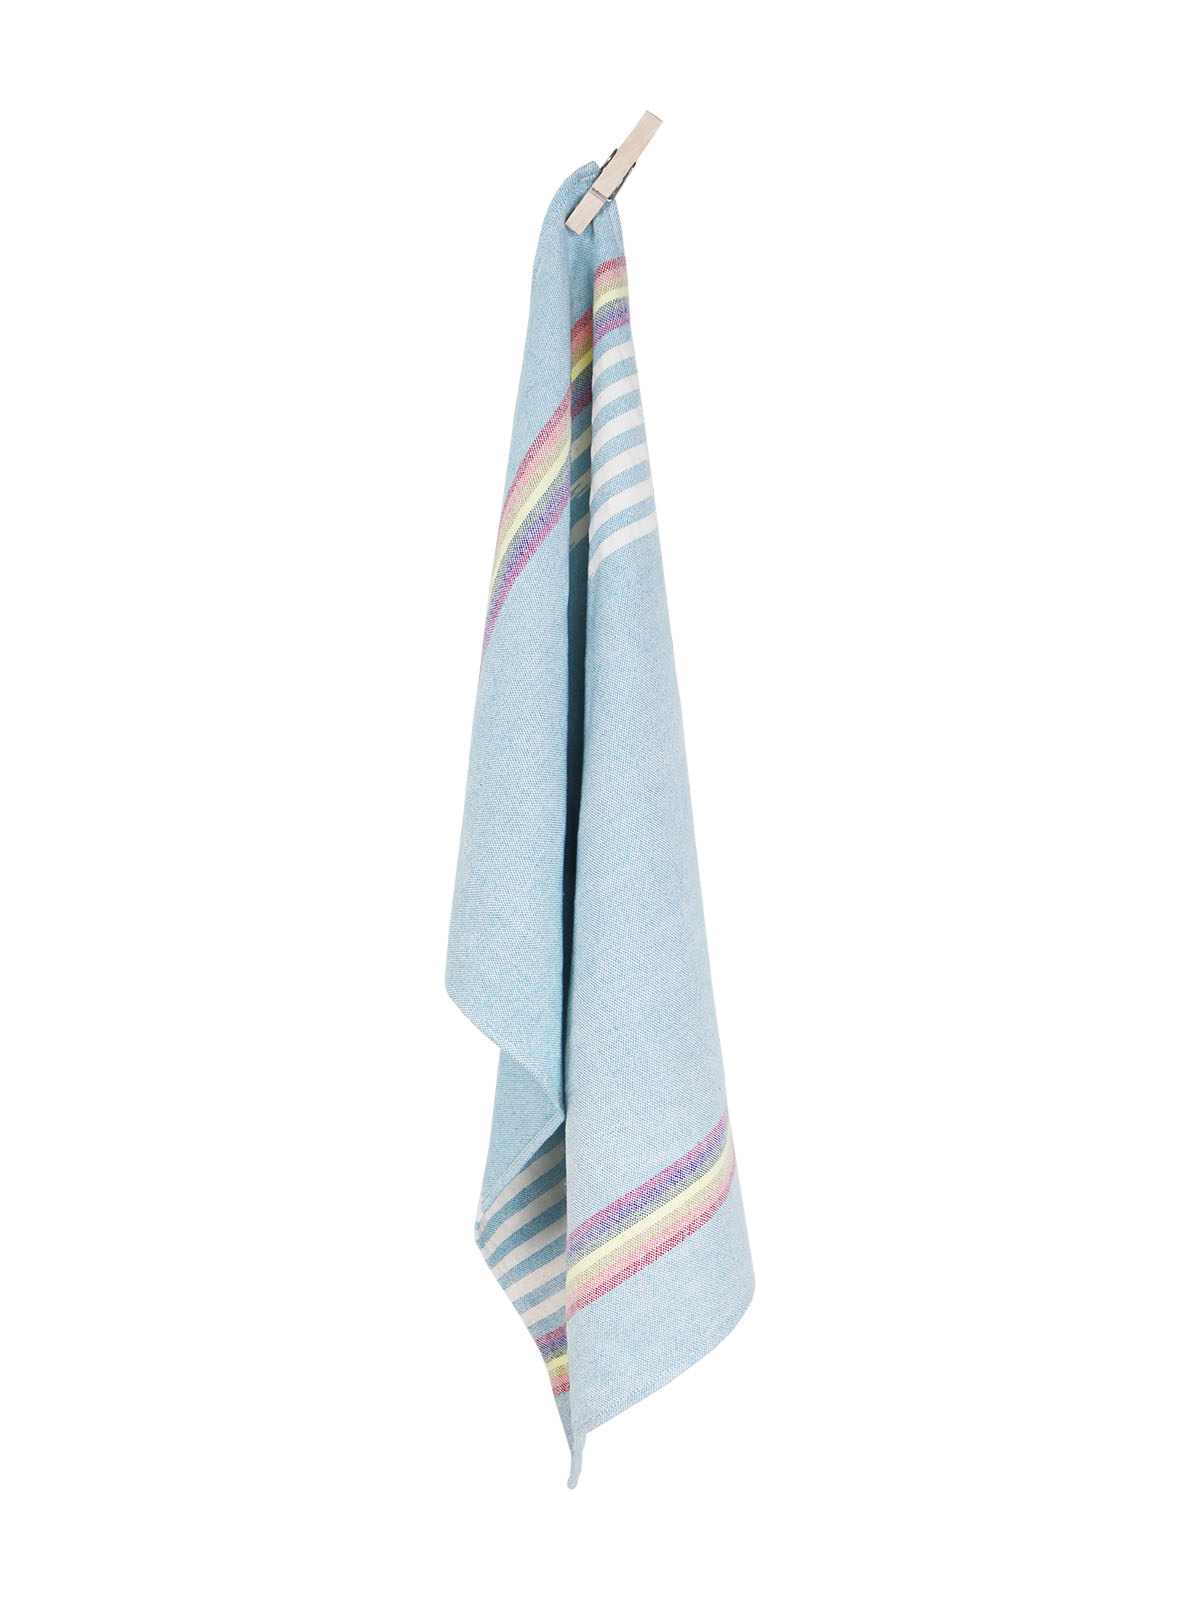 Rainbows - Handwoven Tea Towel - Weavers Project - Mitzie Mee Shop